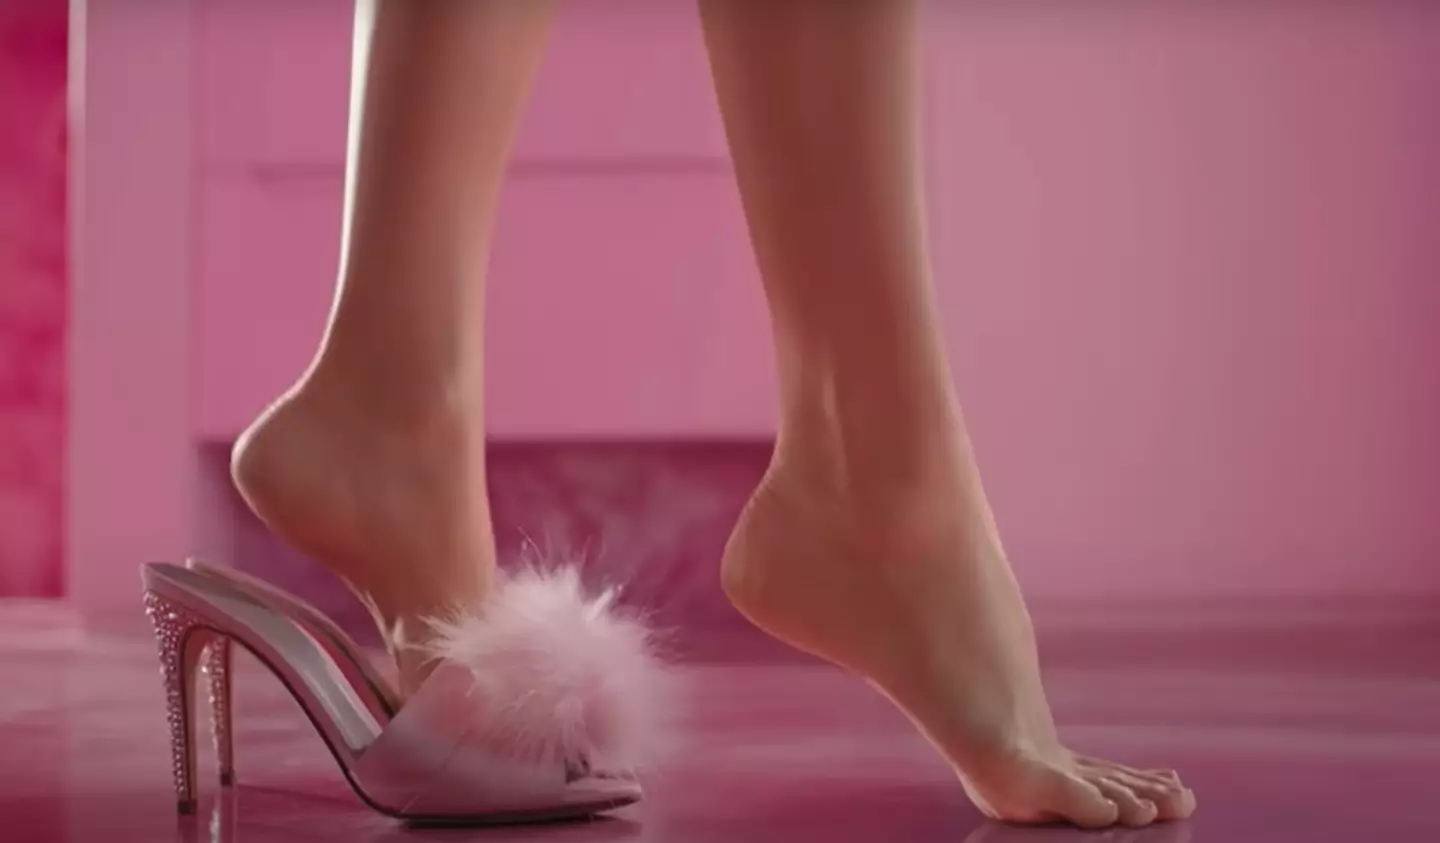 Margot Robbie's feet have gotten the internet talking.